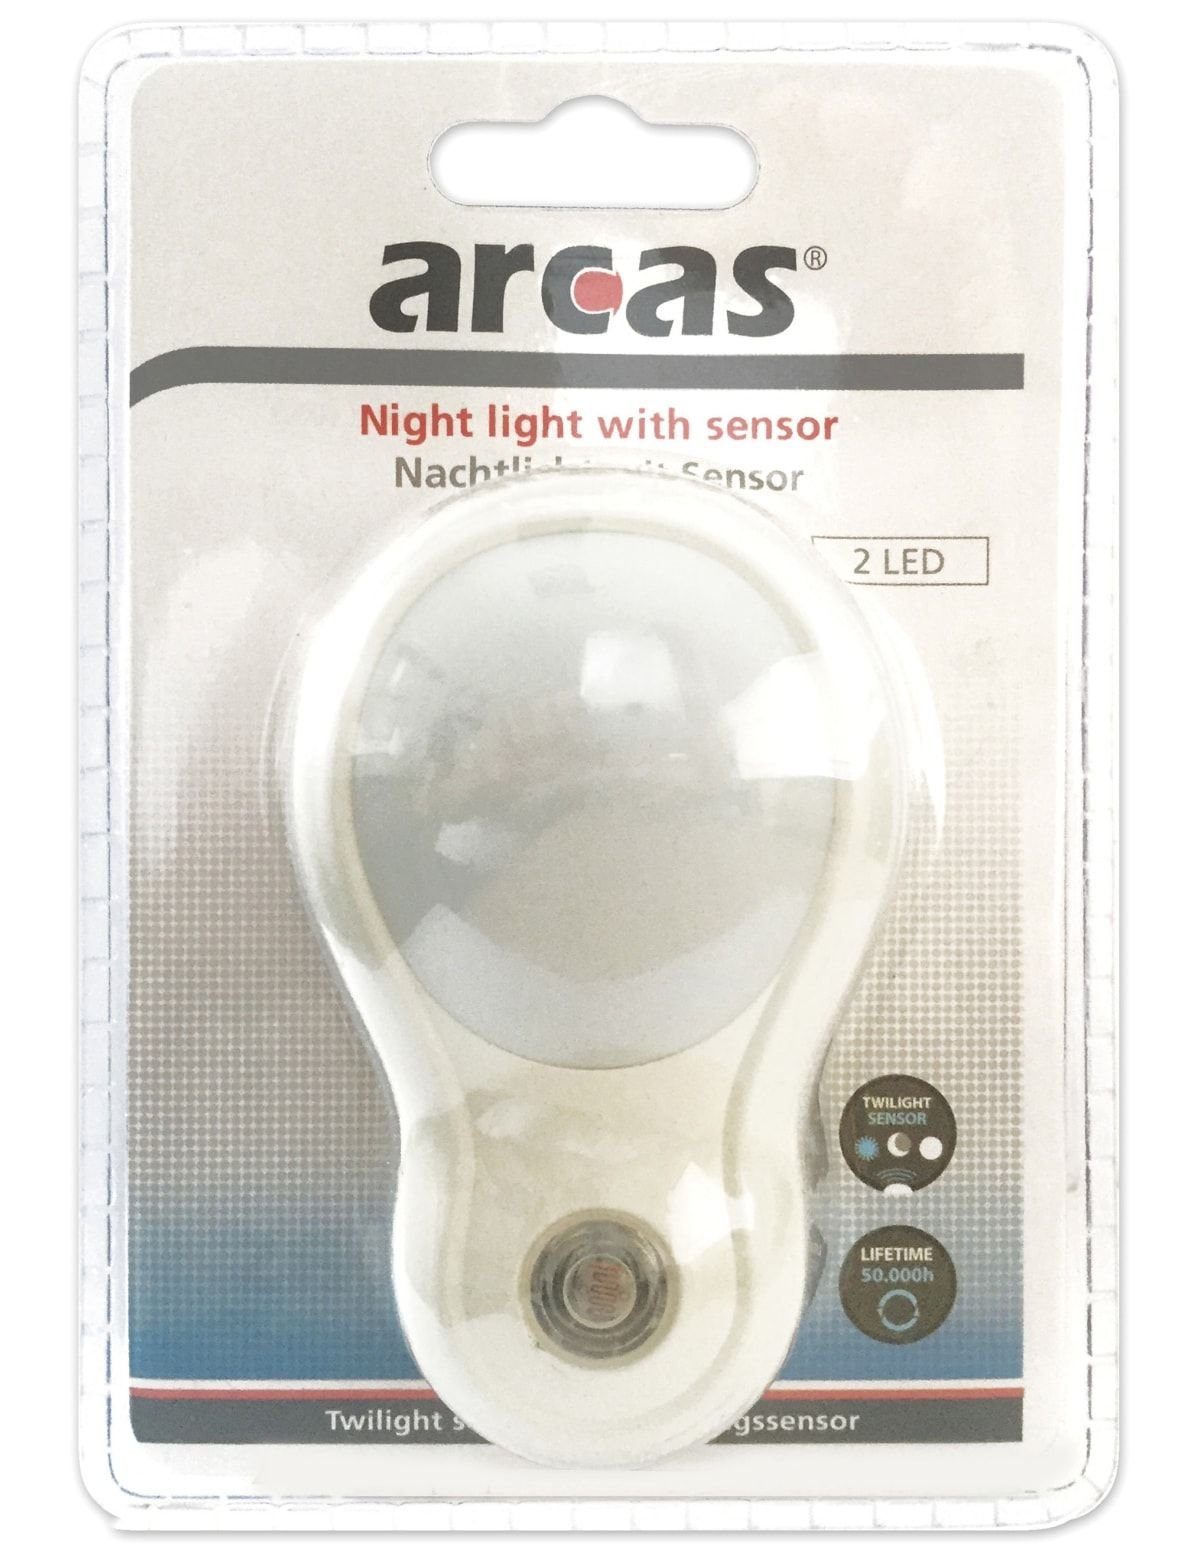 V~ 230 mit Nachtlicht Sensor, 30740011 Arcas Nachtlicht ARCAS